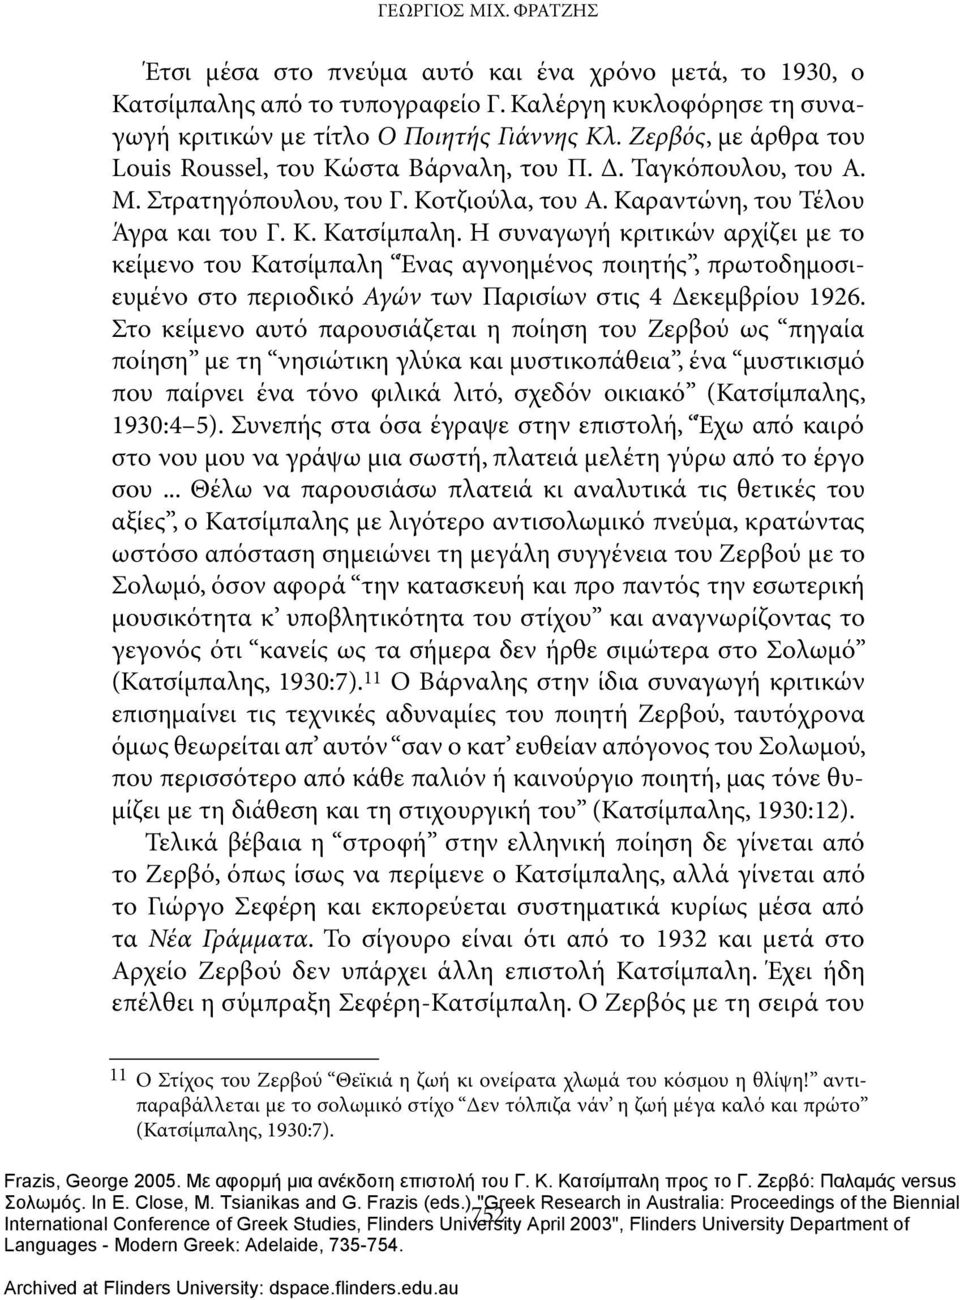 Η συναγωγή κριτικών αρχίζει με το κείμενο του Κατσίμπαλη Ένας αγνοημένος ποιητής, πρωτοδημοσιευμένο στο περιοδικό Αγών των Παρισίων στις 4 Δεκεμβρίου 1926.